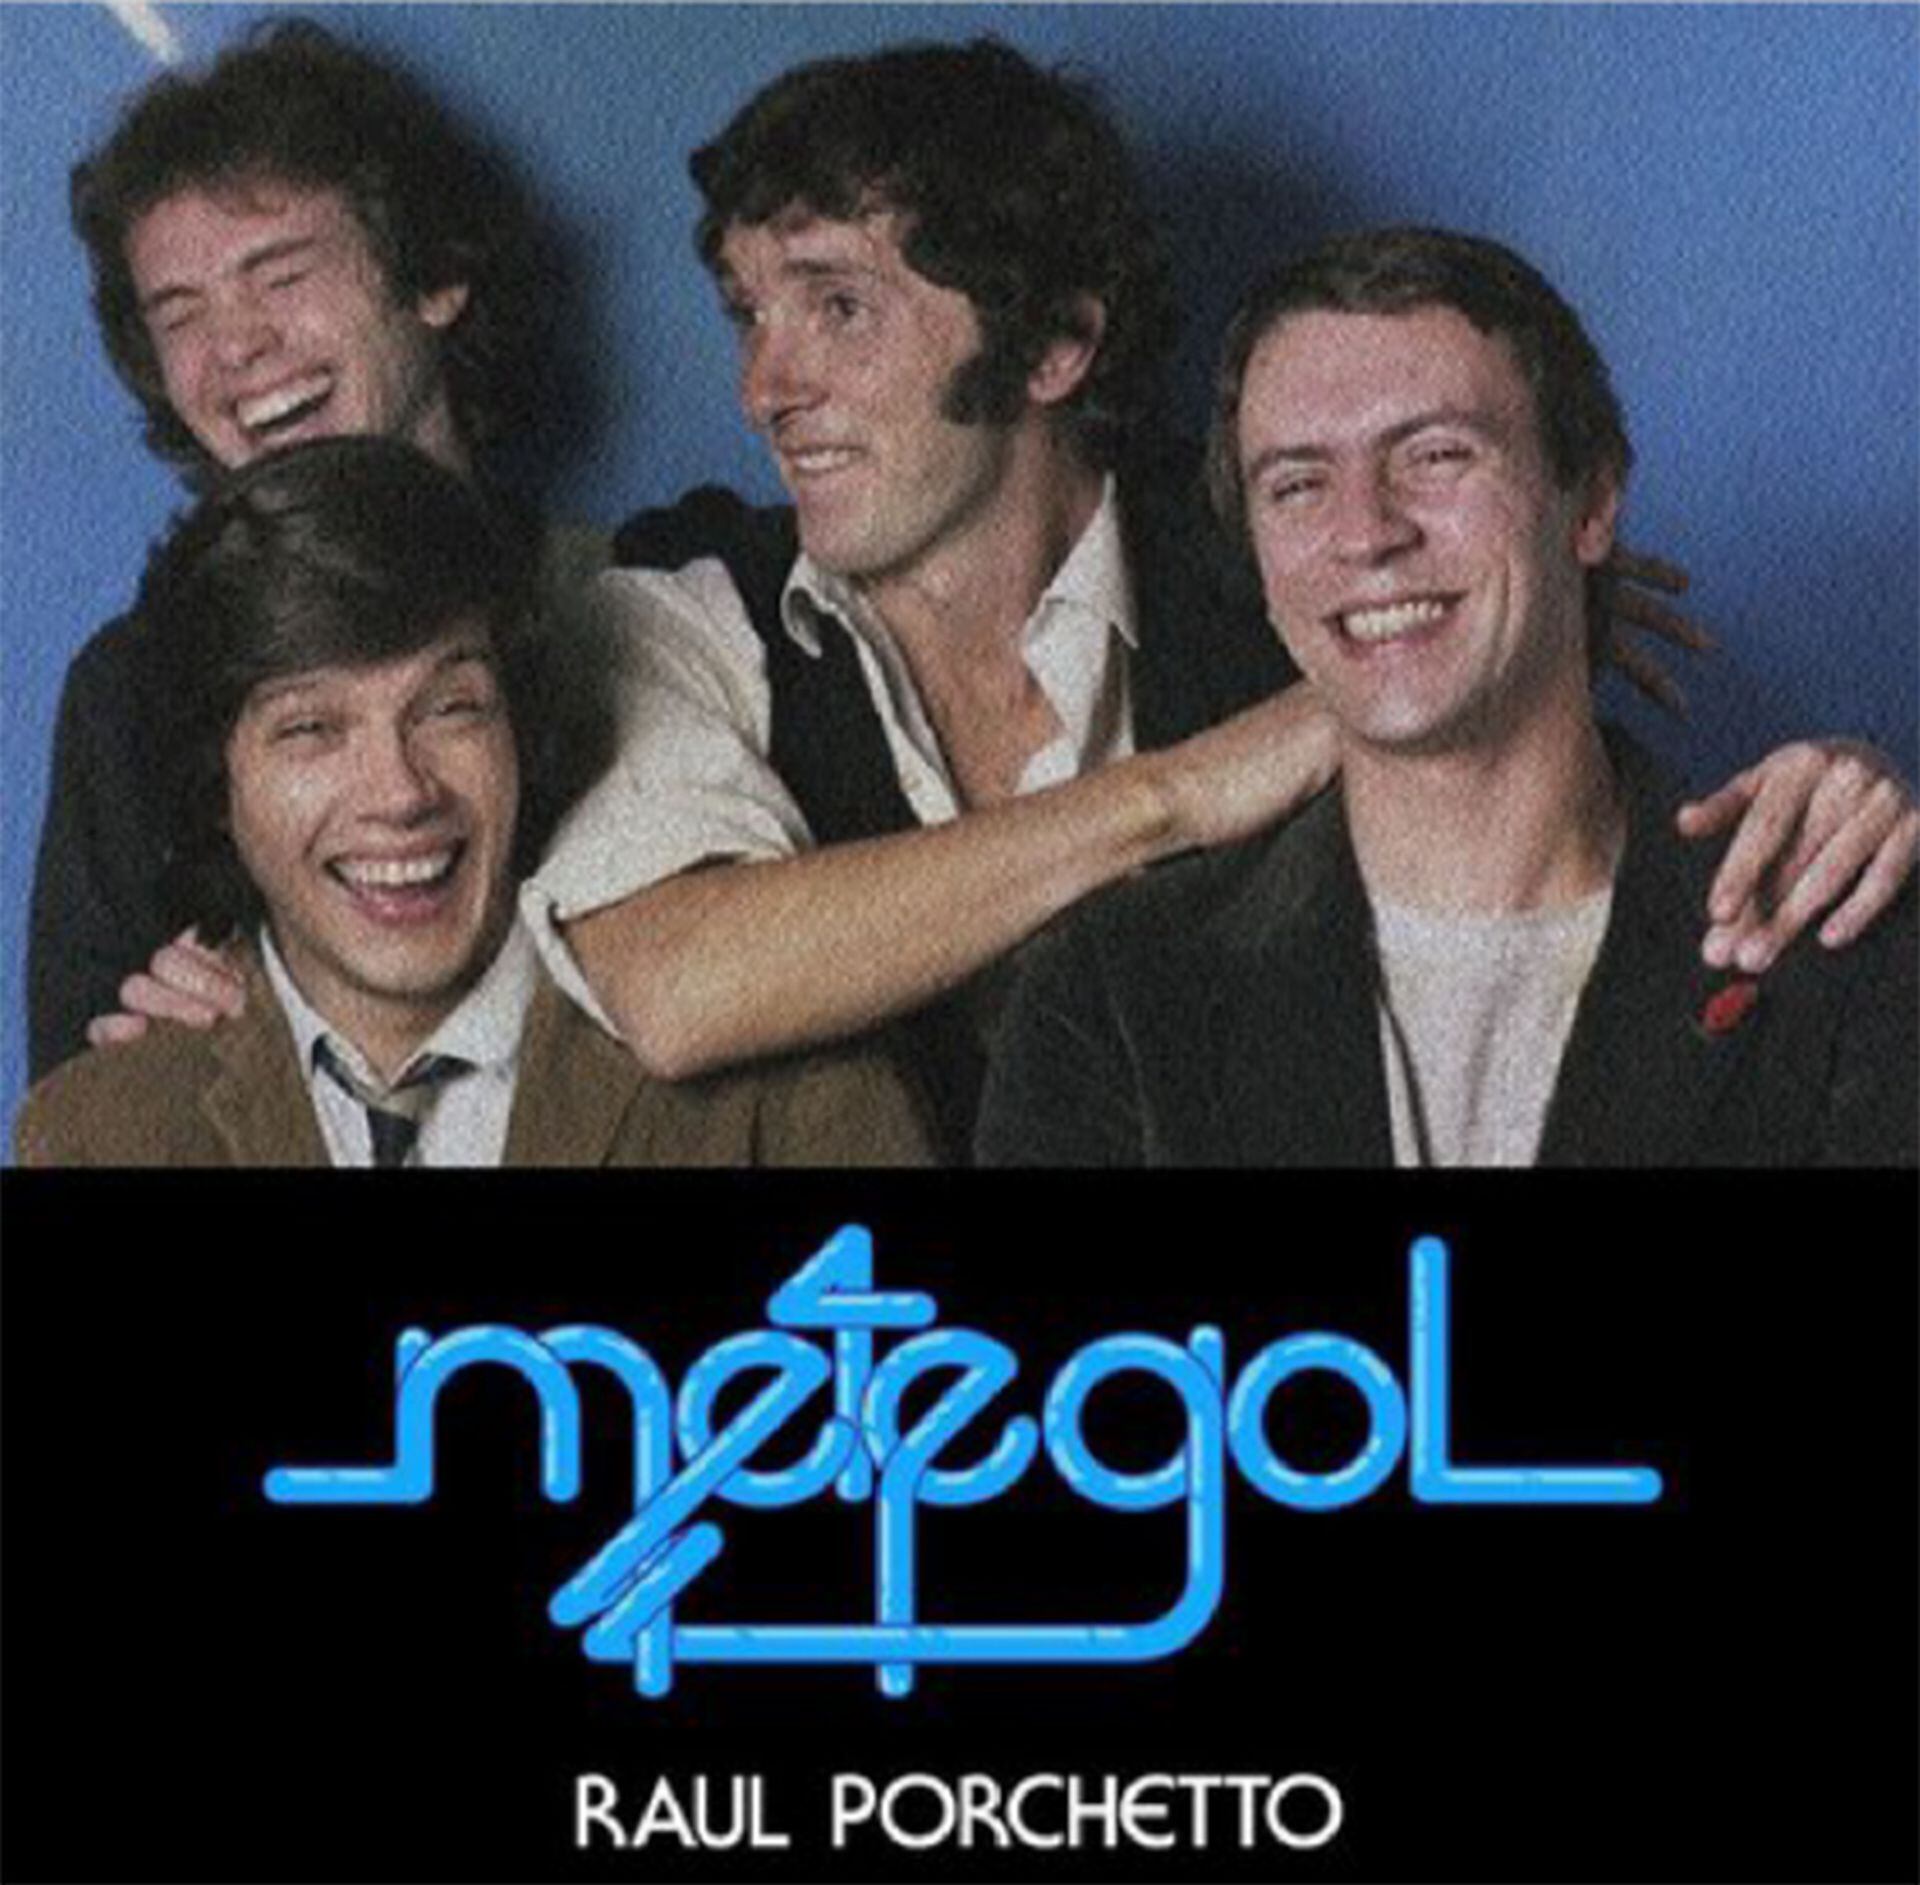 Tapa del disco Metegol, de Raul Porchetto (izquierda arriba), junto al trío que años después sería GIT (Guyot, Iturri, Toth)